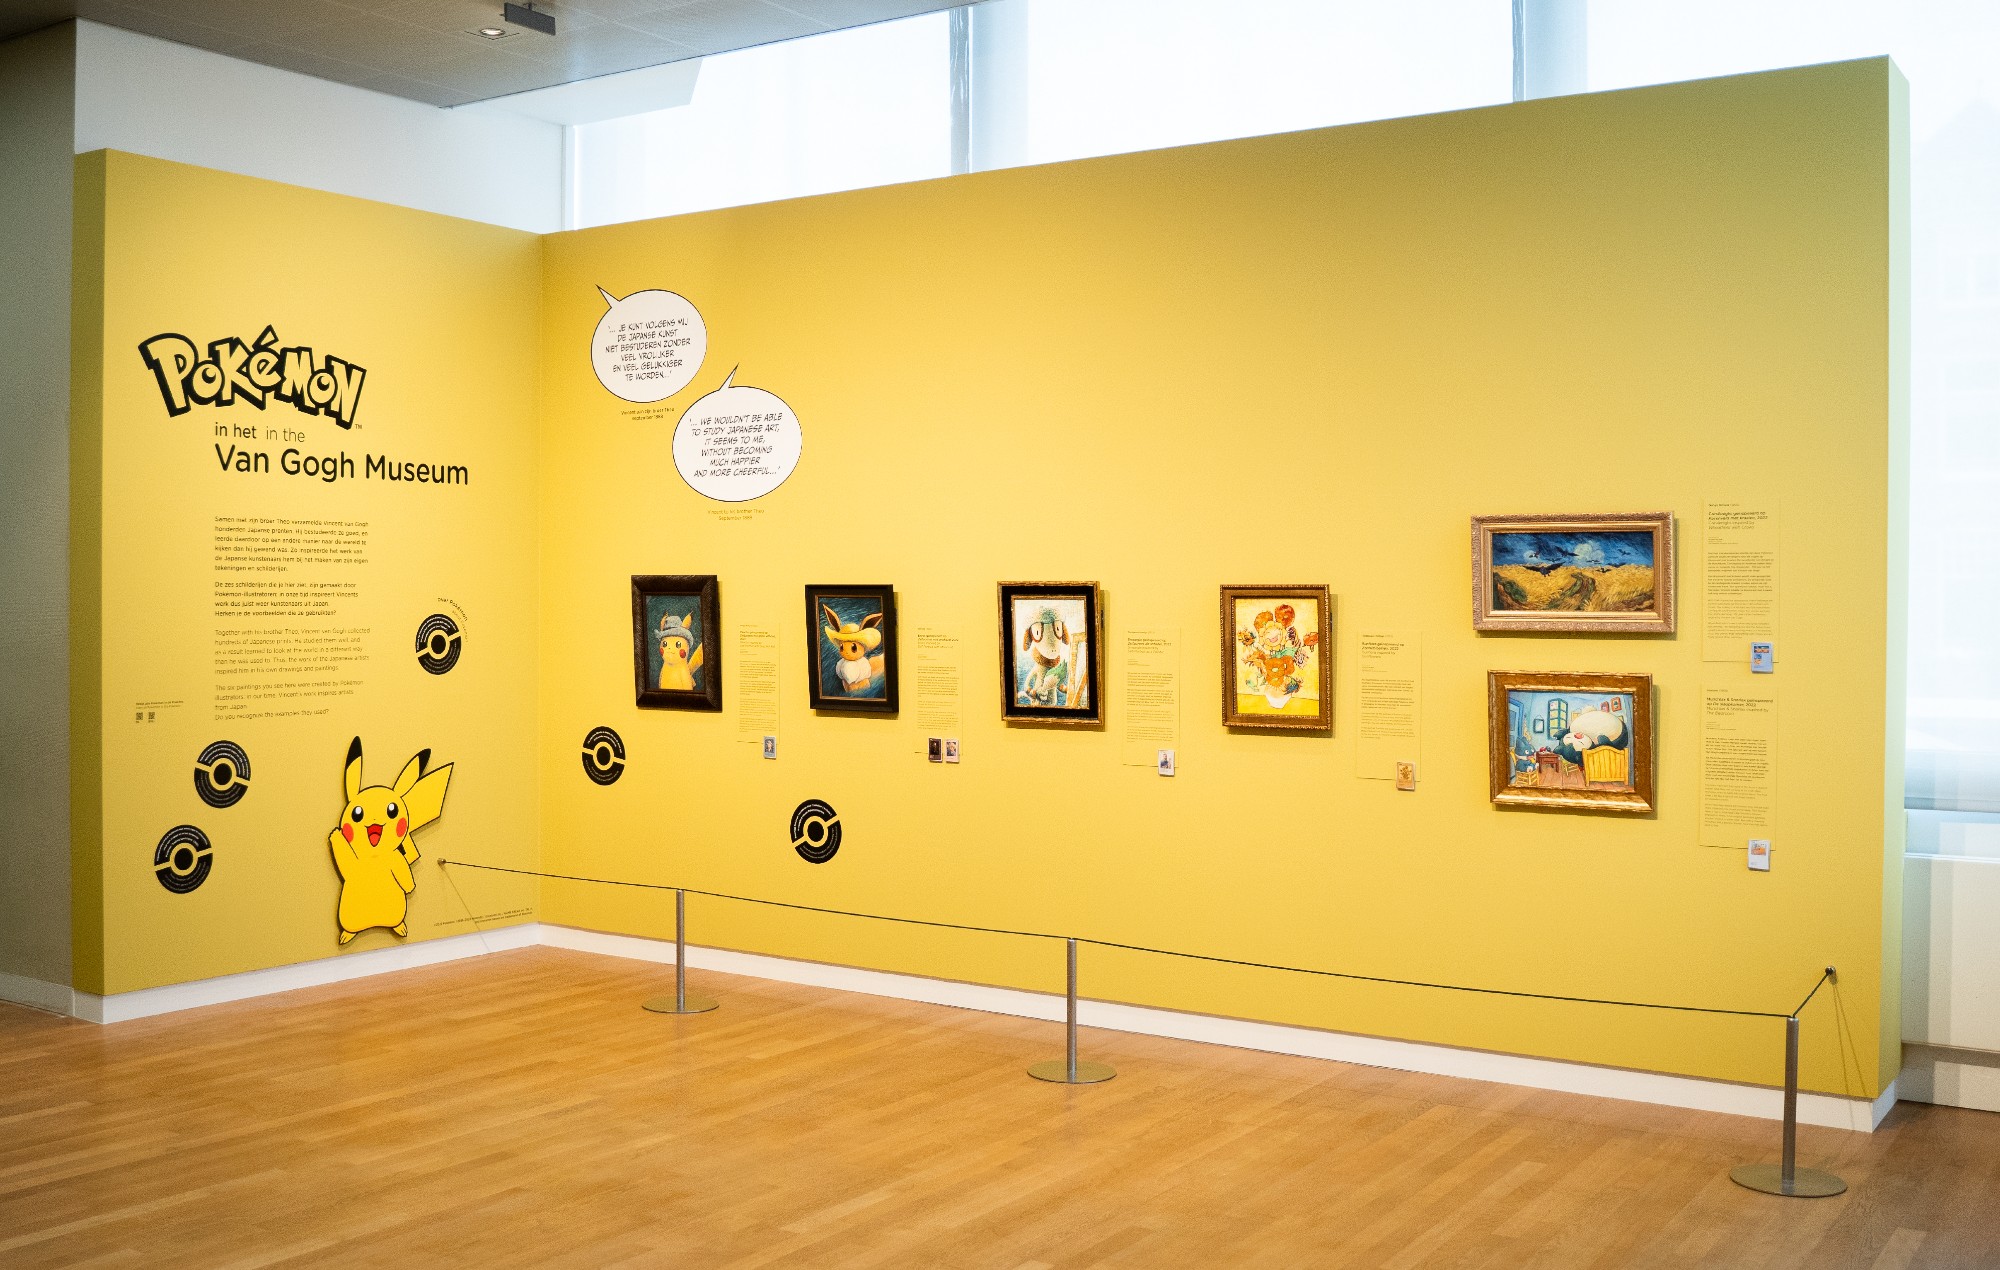 Suspendidos los empleados del Museo Van Gogh por un "incidente" con 'Pokémon